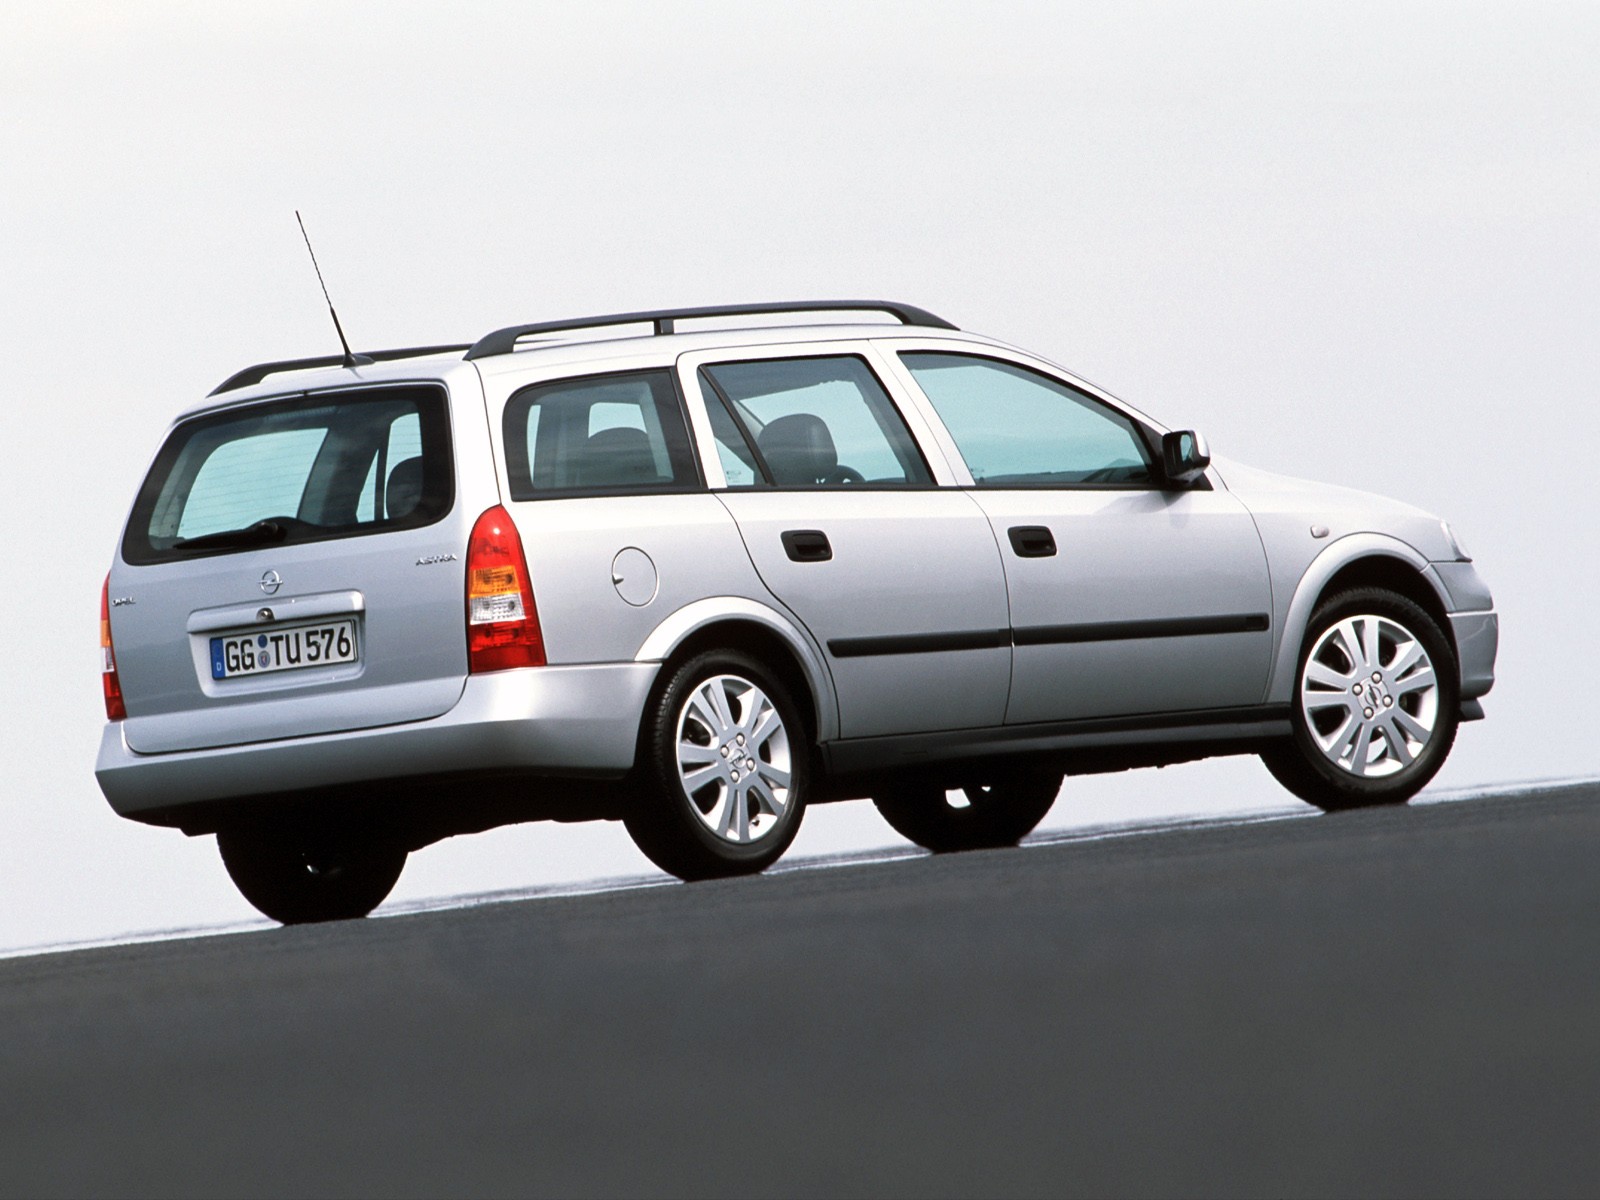 1998-2000 Opel Astra G Caravan 1.8 Ecotec 16V (116 Hp) Automatic